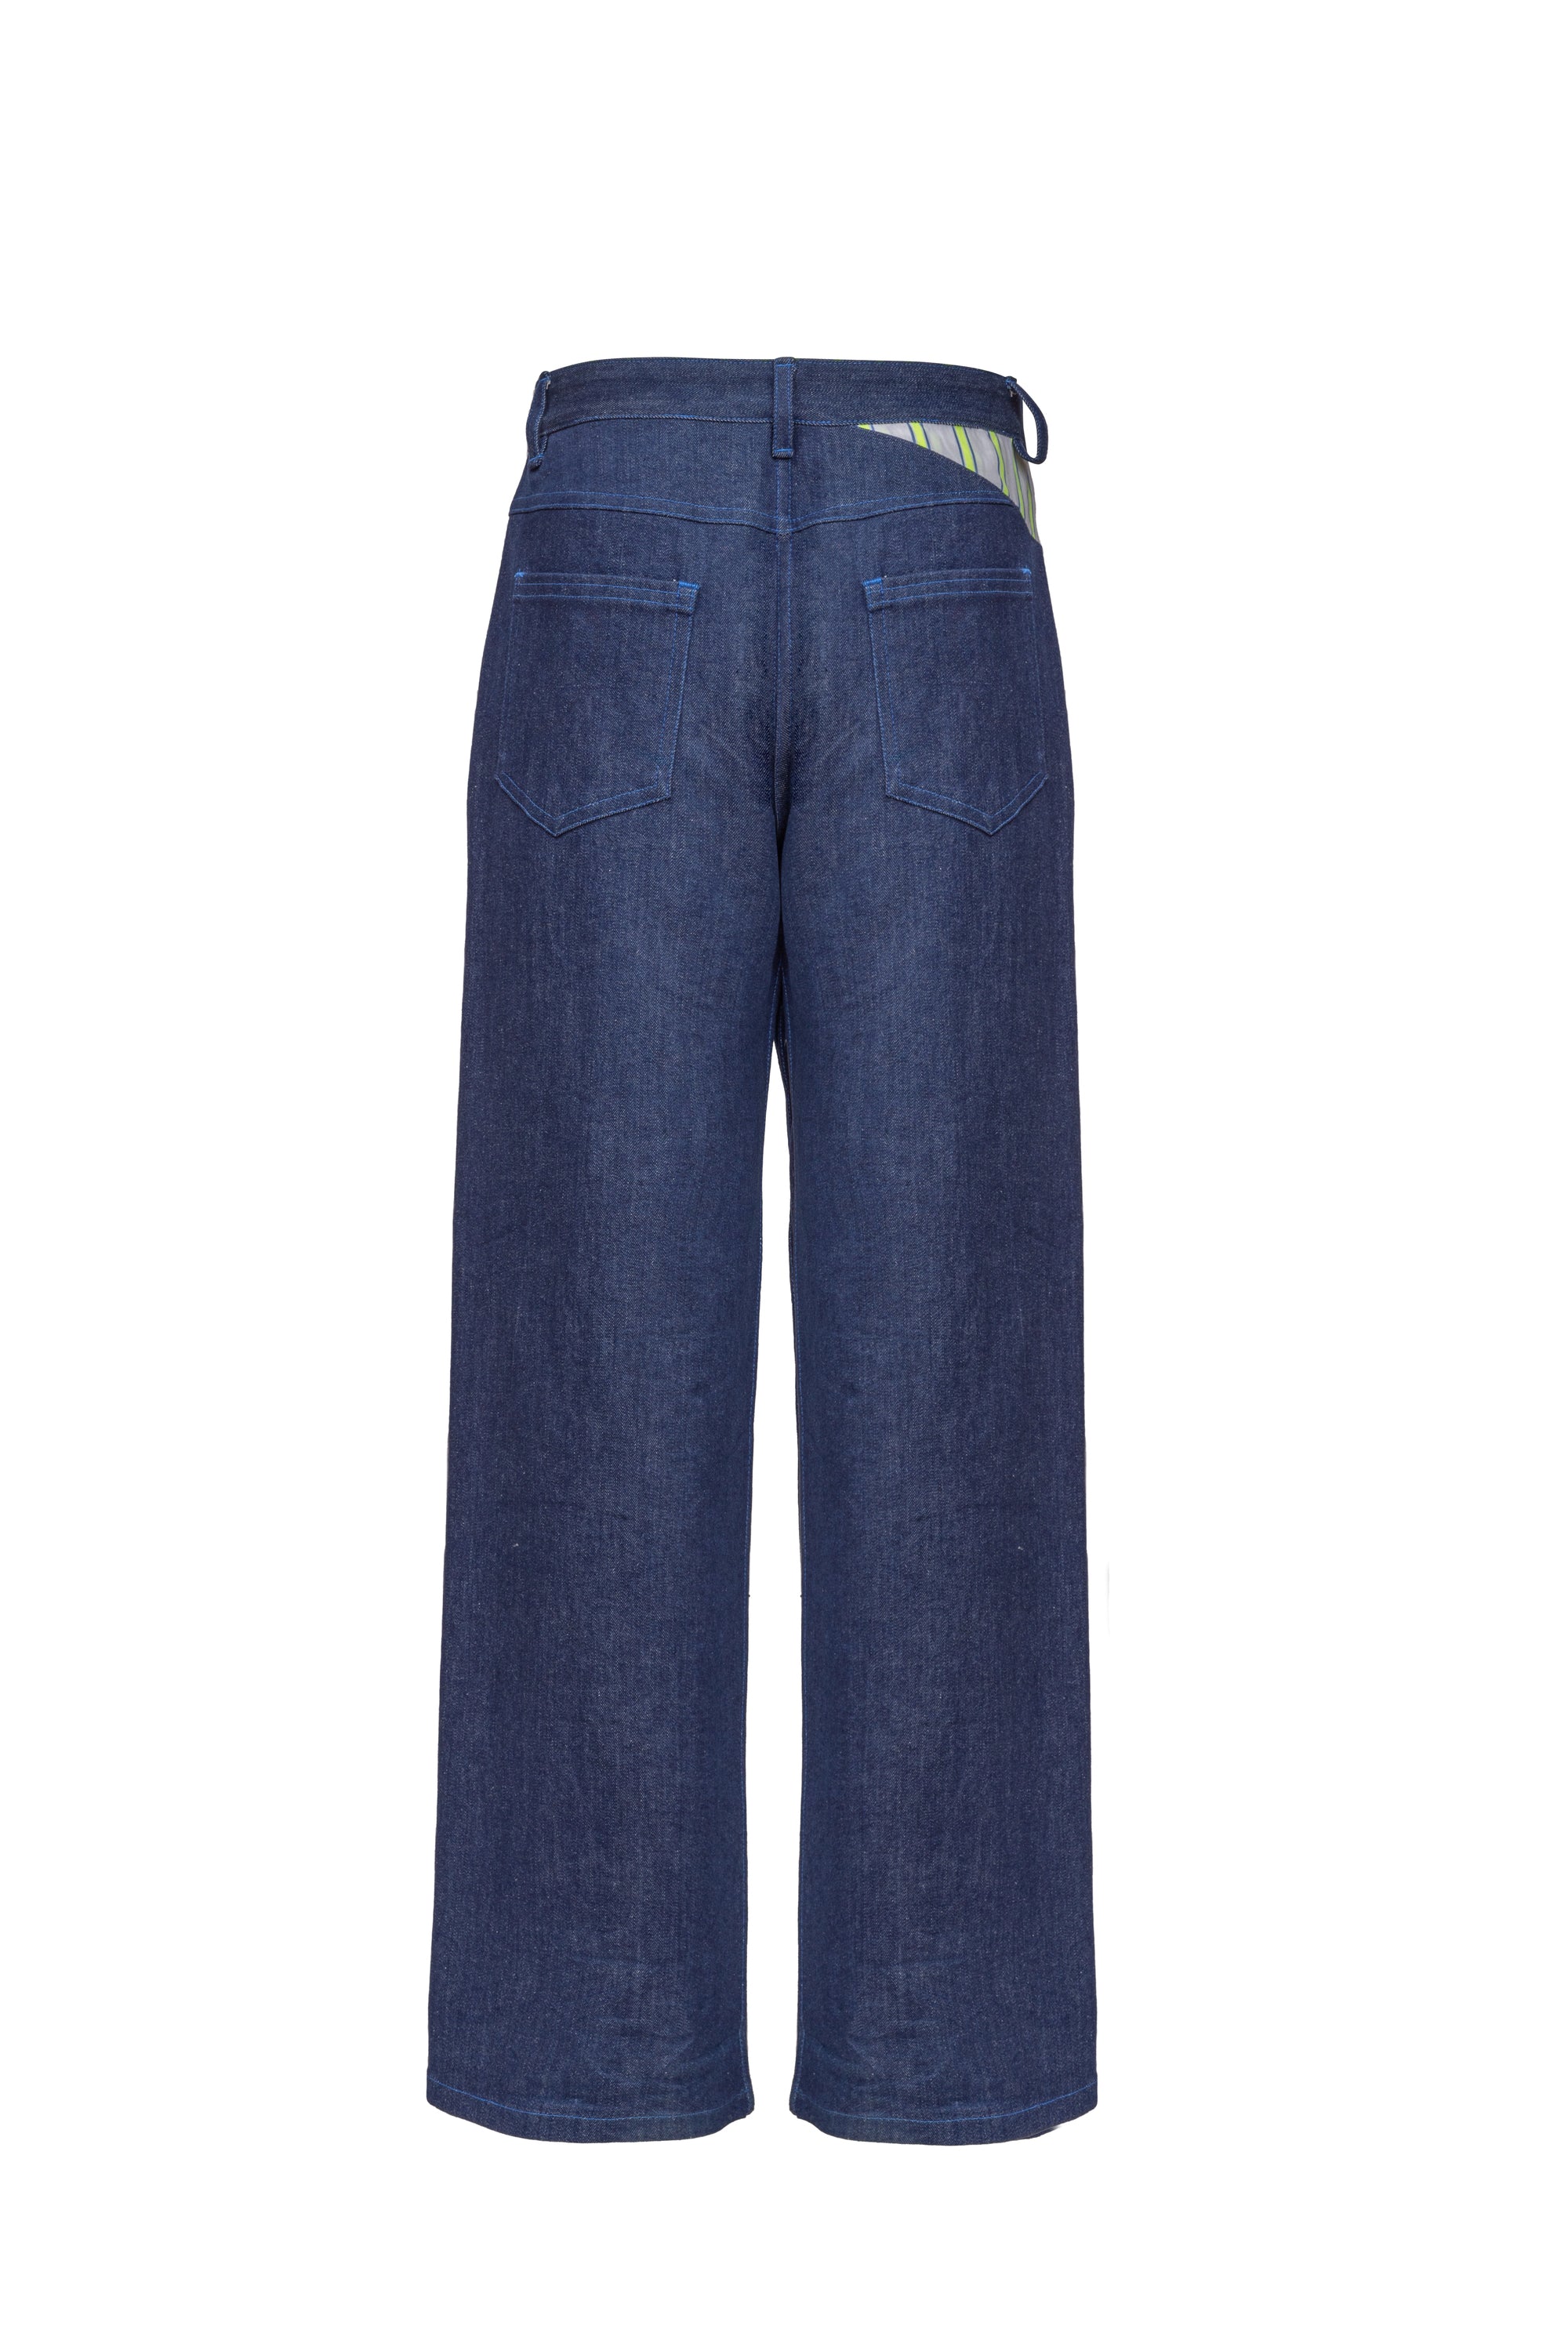 2-in-1 Jeans mit weitem Hosenbein und Destroyed-Look und verschiedenen Tragemöglichkeiten mit den integrierten Shorts